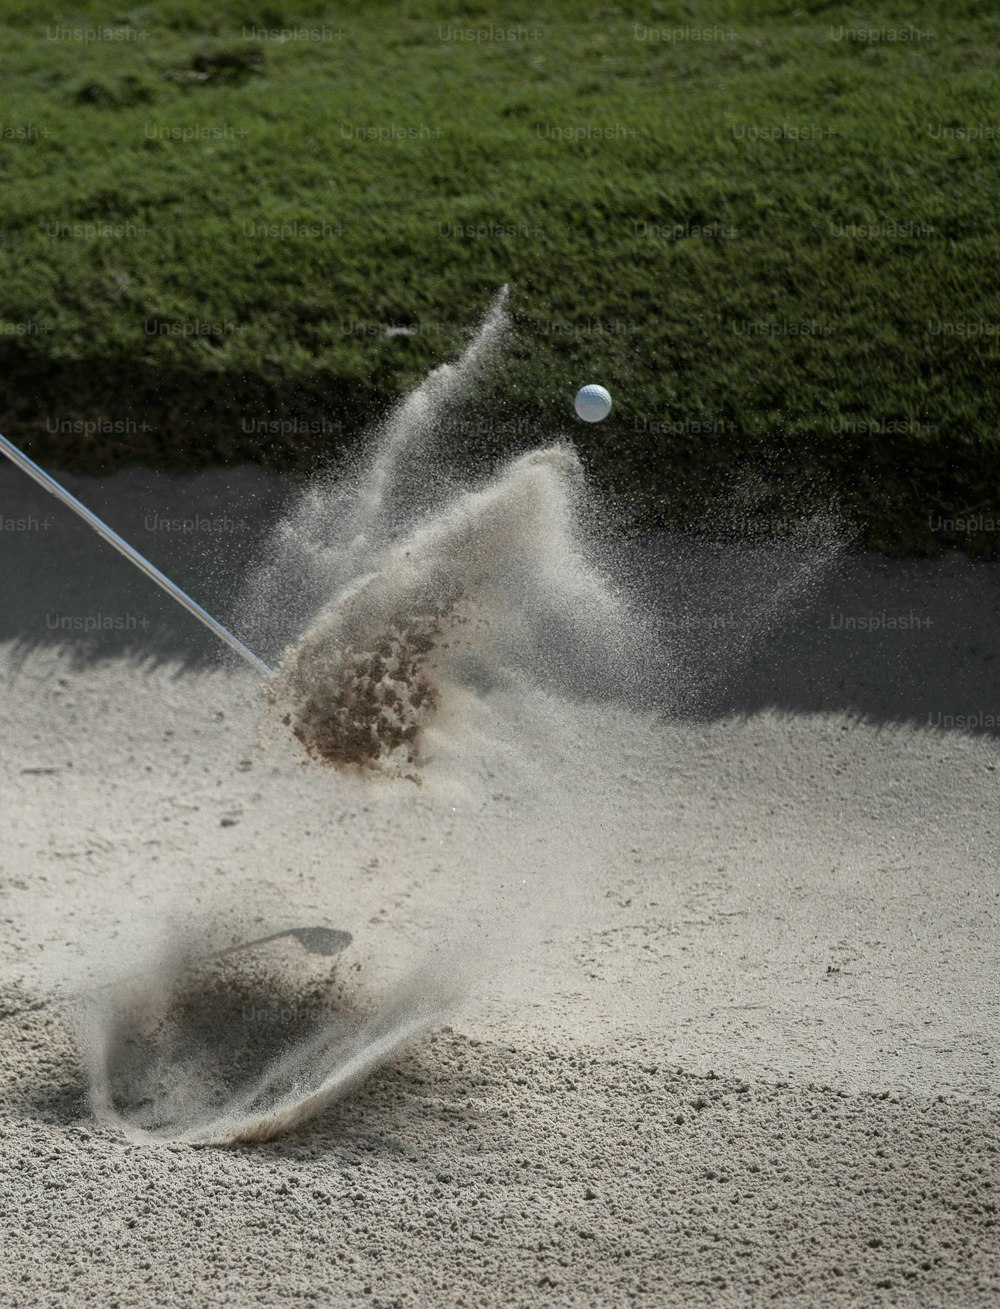 Un homme frappant une balle de golf avec un club de golf